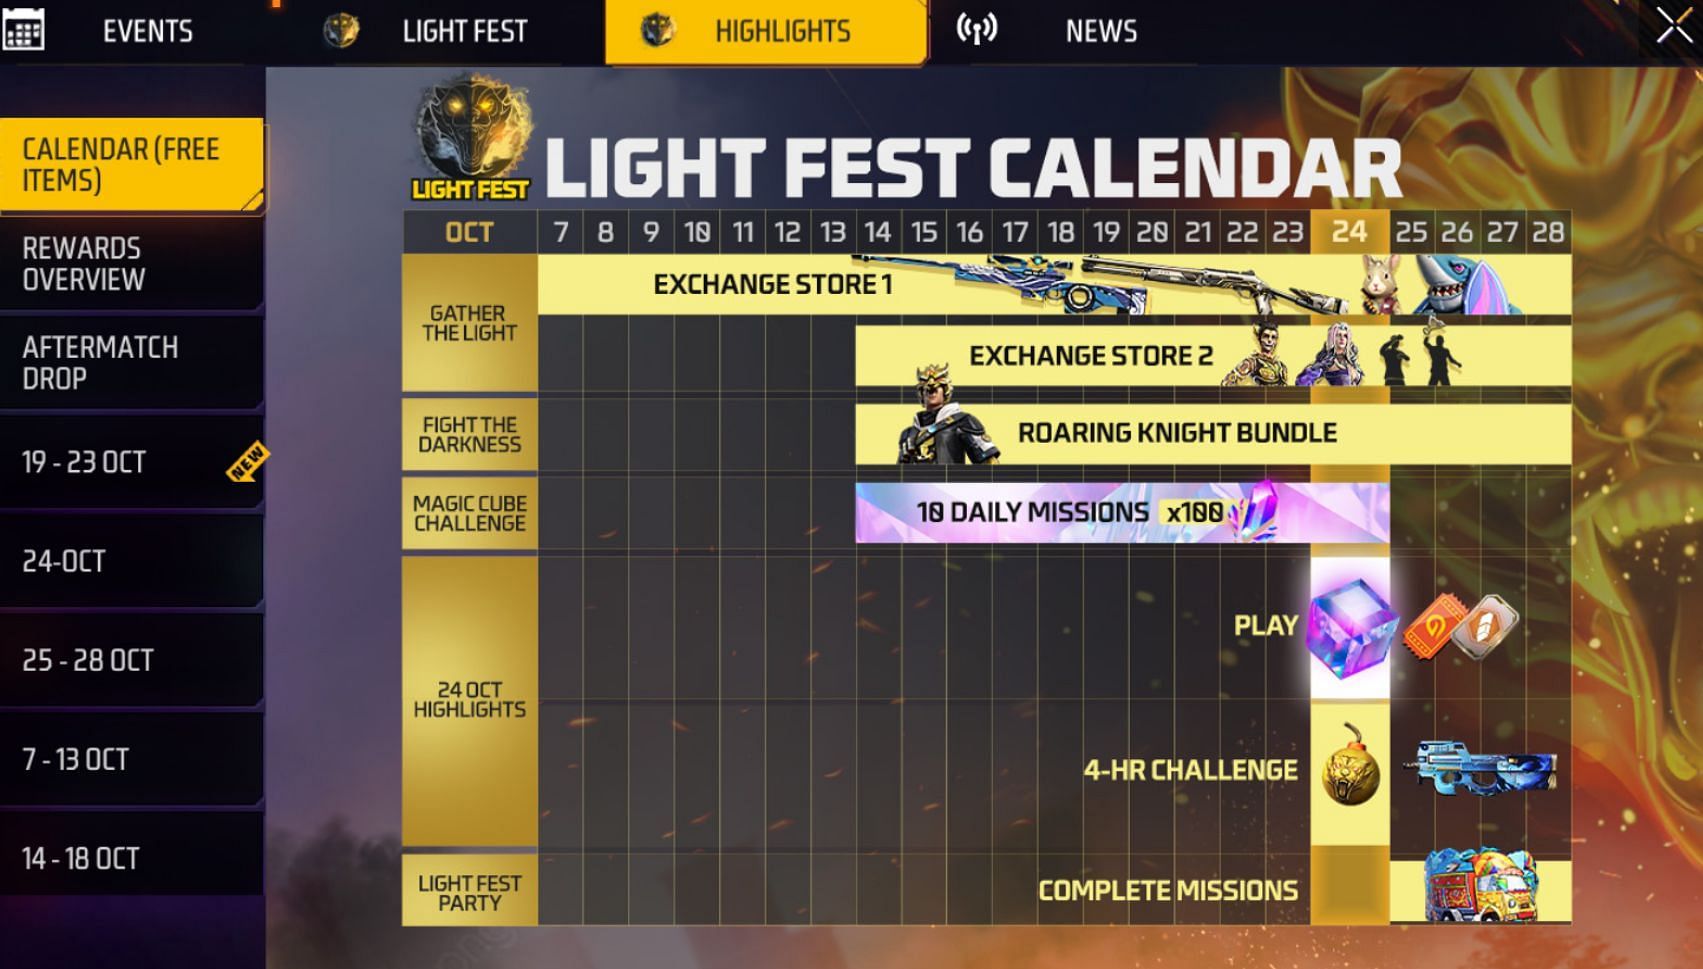 Light Fest event calendar (Image via Garena)